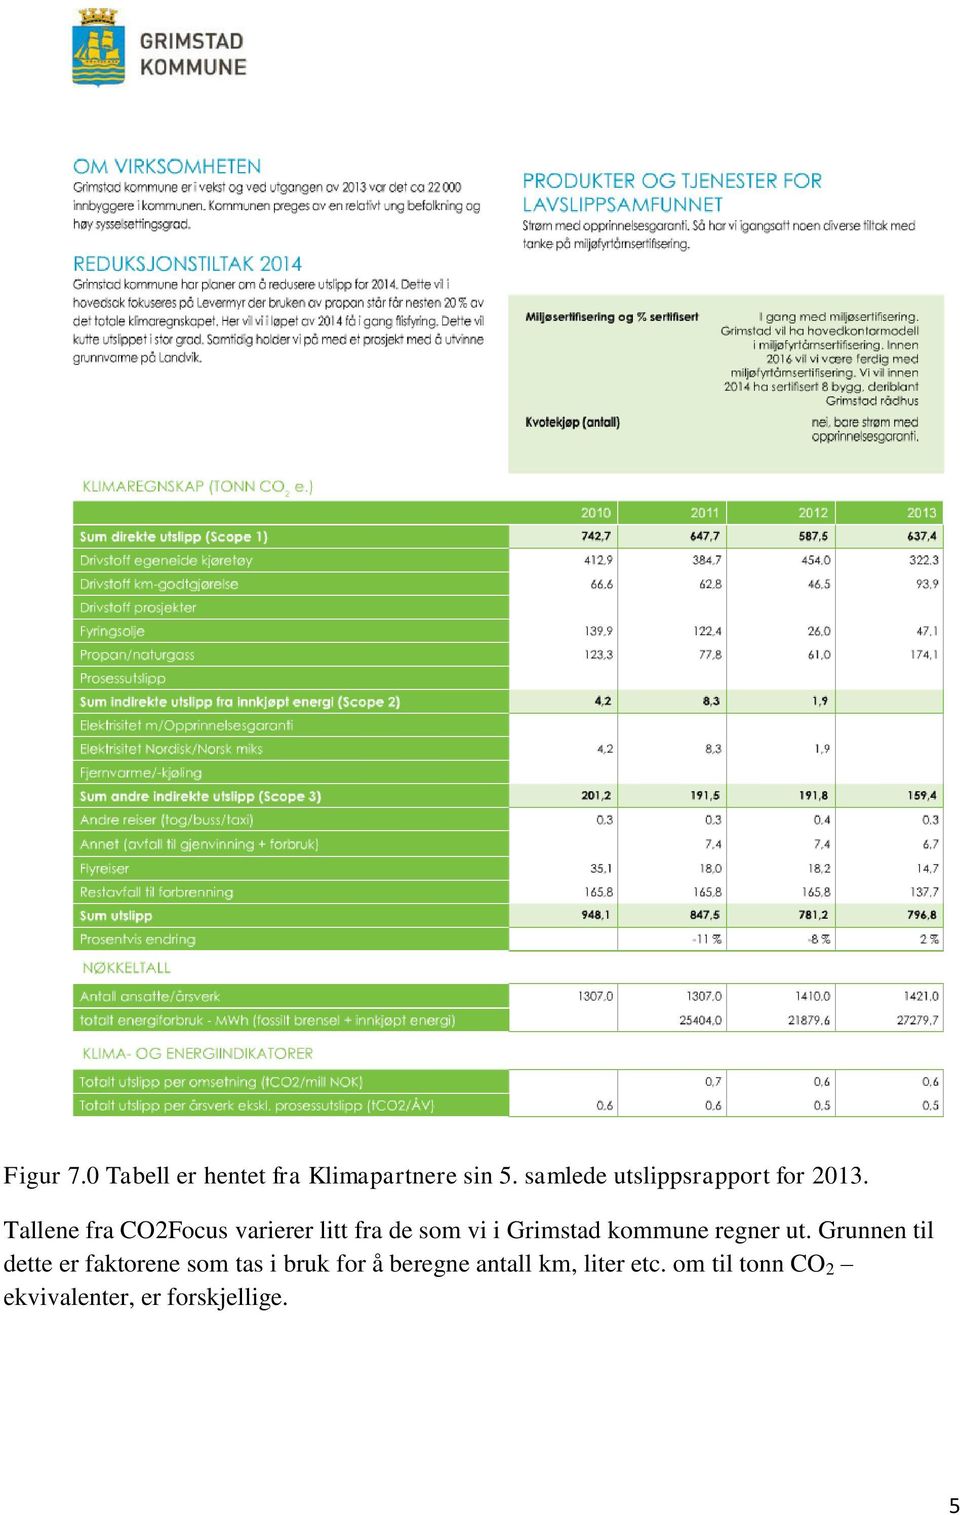 Tallene fra CO2Focus varierer litt fra de som vi i Grimstad kommune